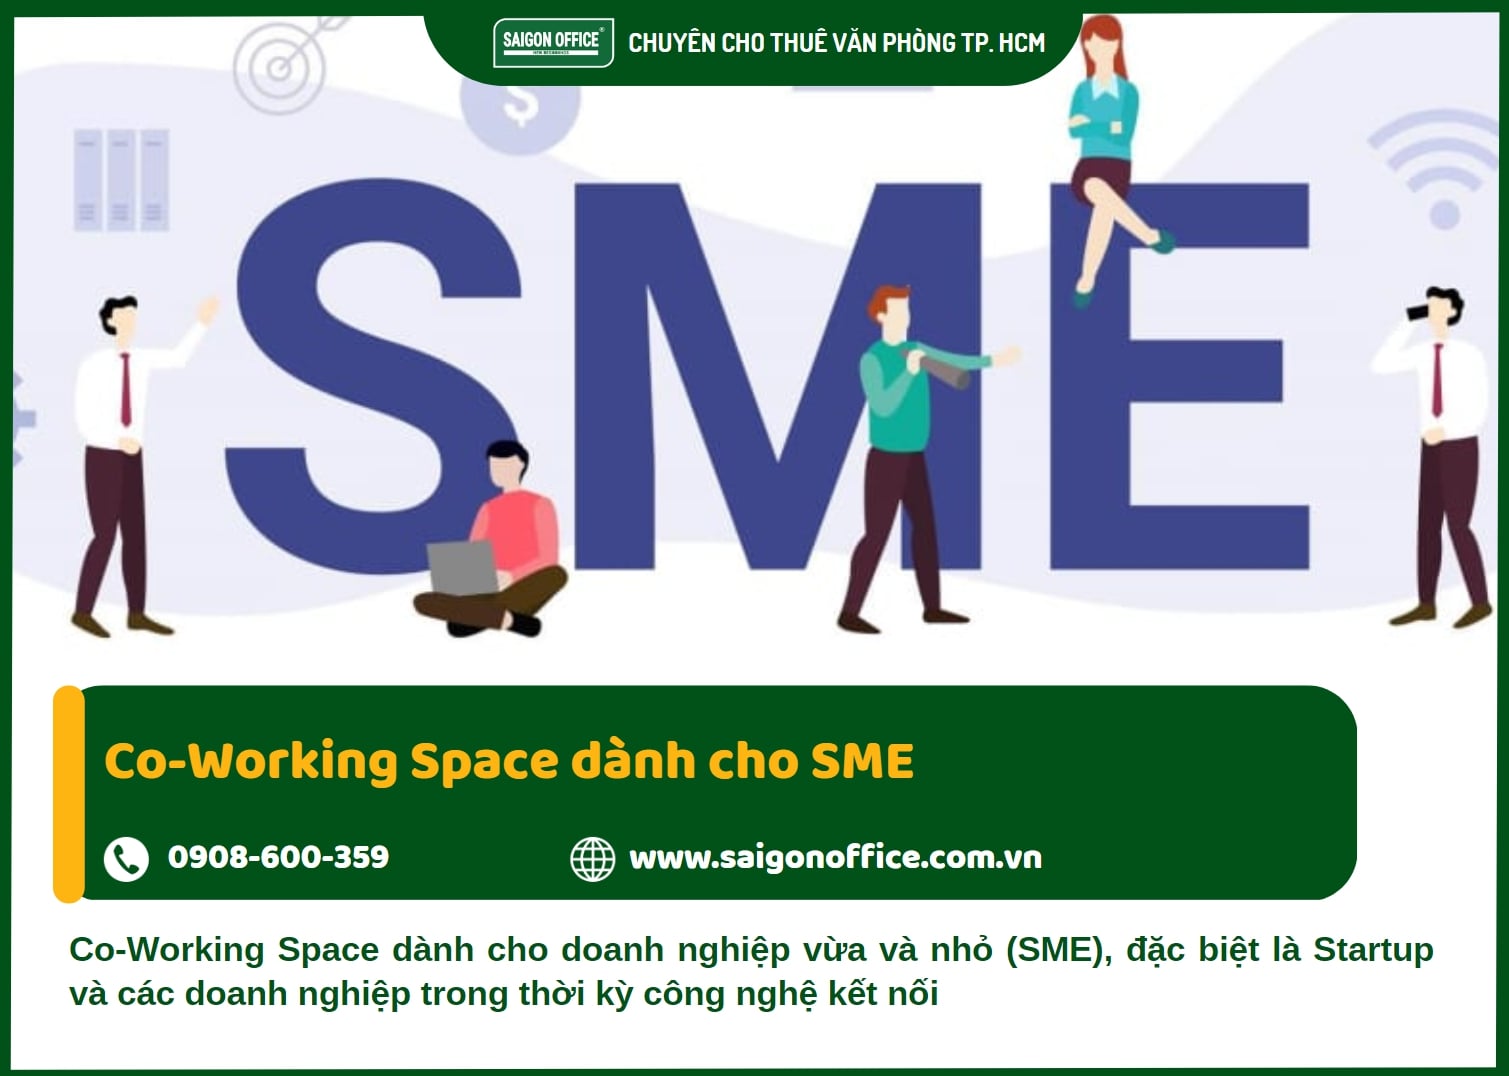 Co-Working Space dành cho SME – Doanh nghiệp vừa và nhỏ